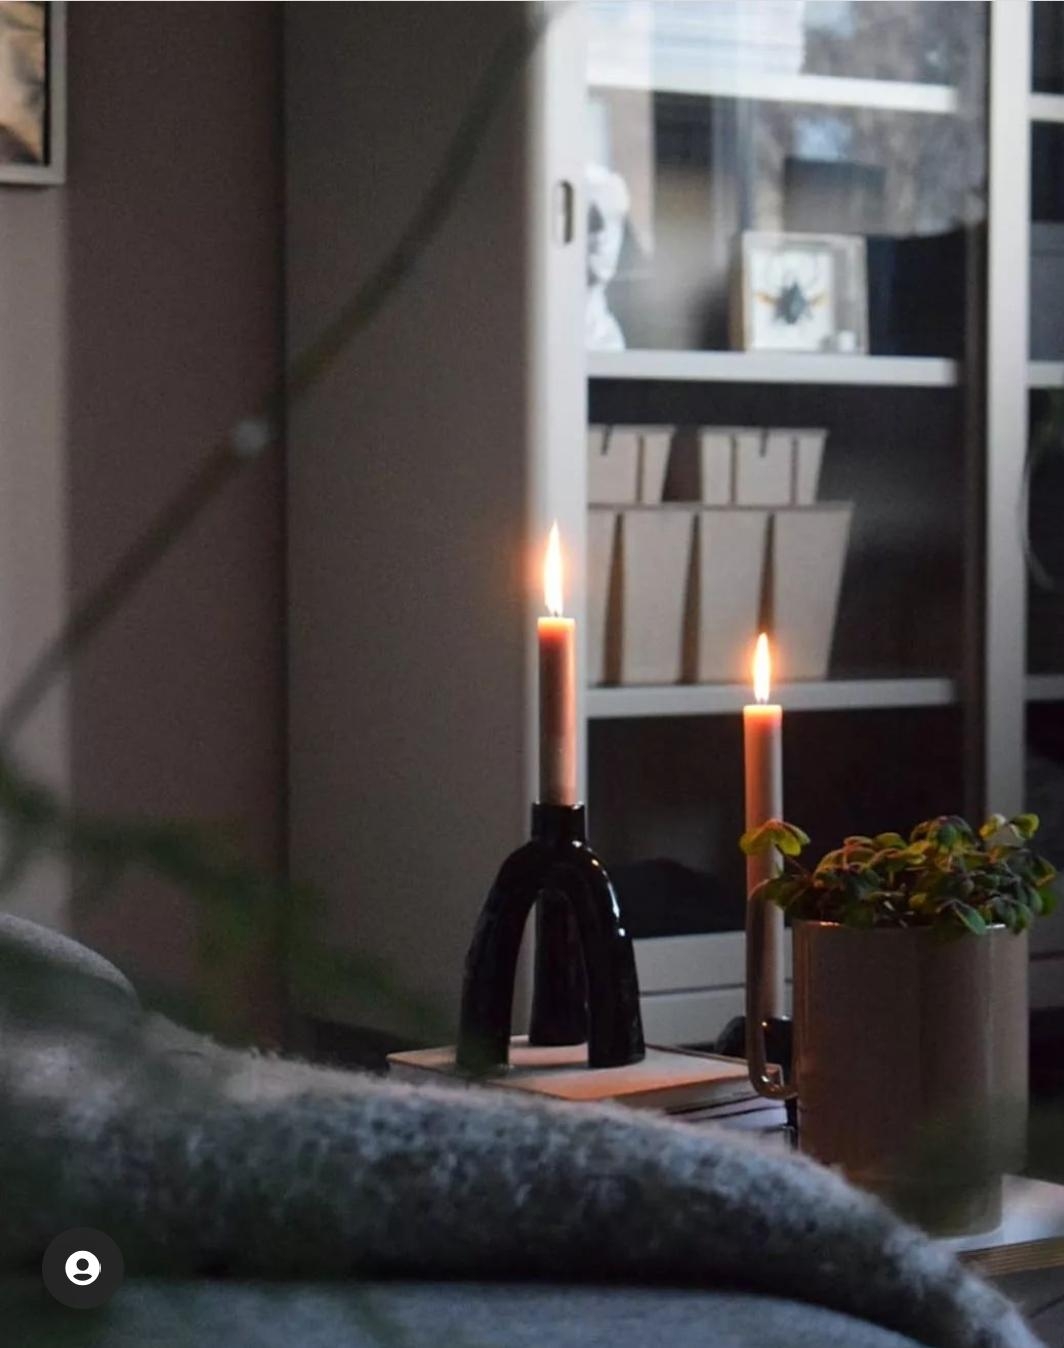 #candlelight #wohnzimmer #livingroom #kerzen #candleholder